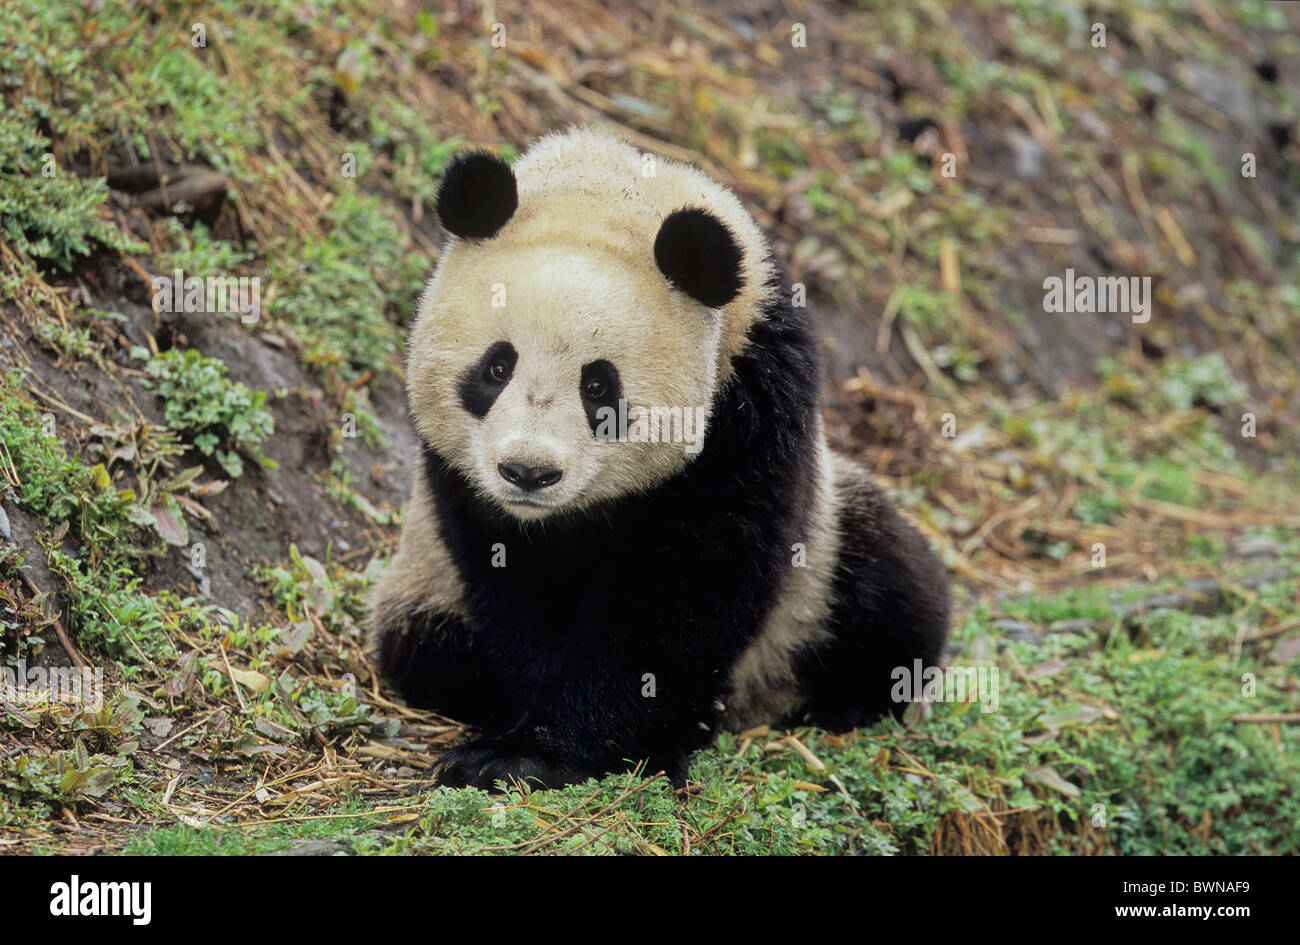 Panda géant Ailuropoda melanoleuca Asie Chine Sichuan Wolong Giant panda du Sichuan l'homme et la biosphère Sanctuaires Banque D'Images